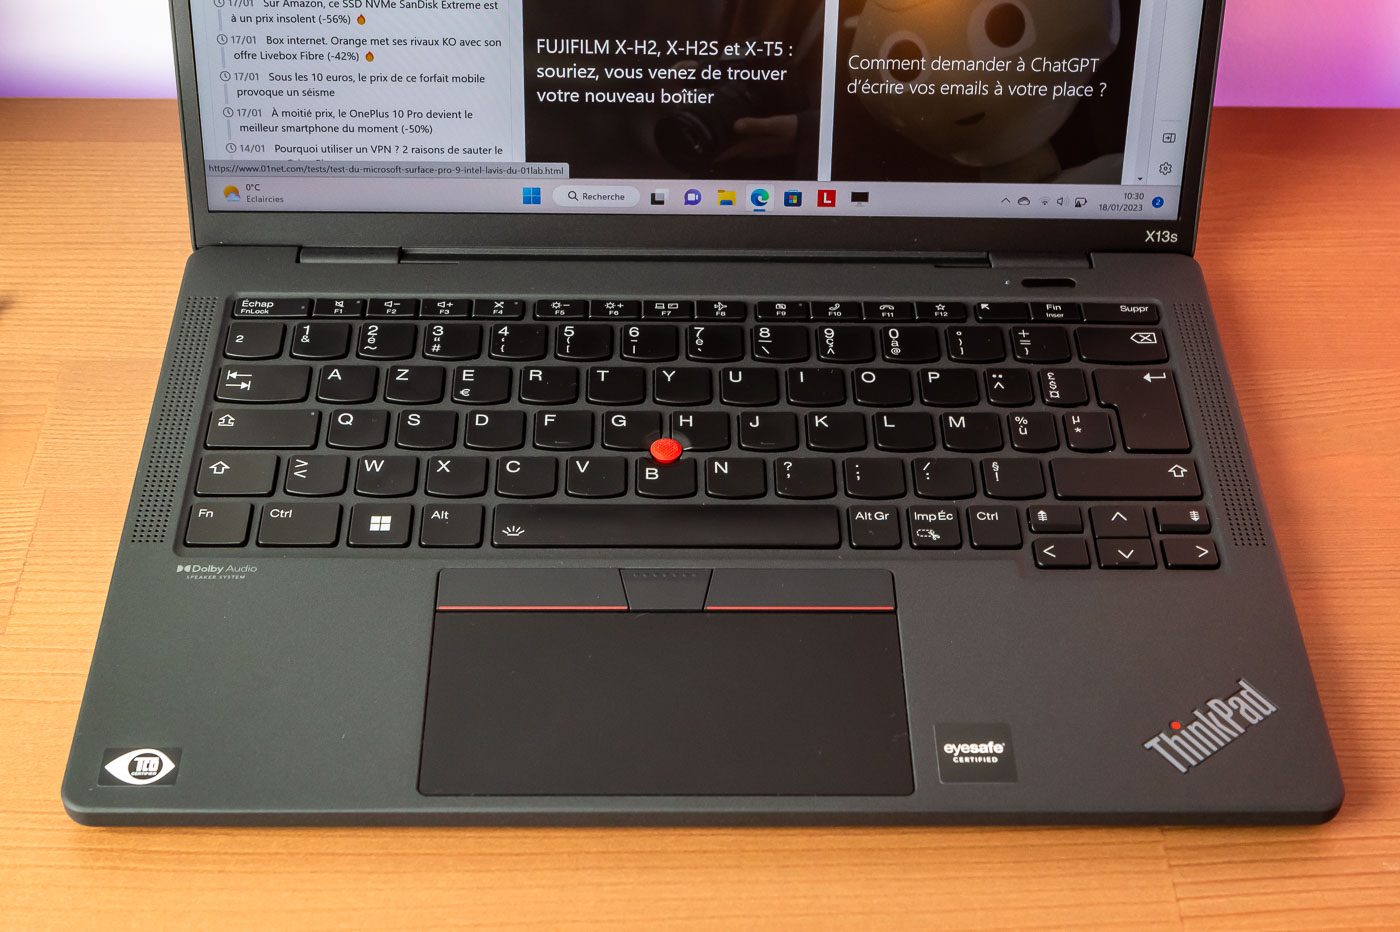 Le clavier du ThinkPad X13s est confortable et fidèle à la tradition des portables Lenovo/IBM.